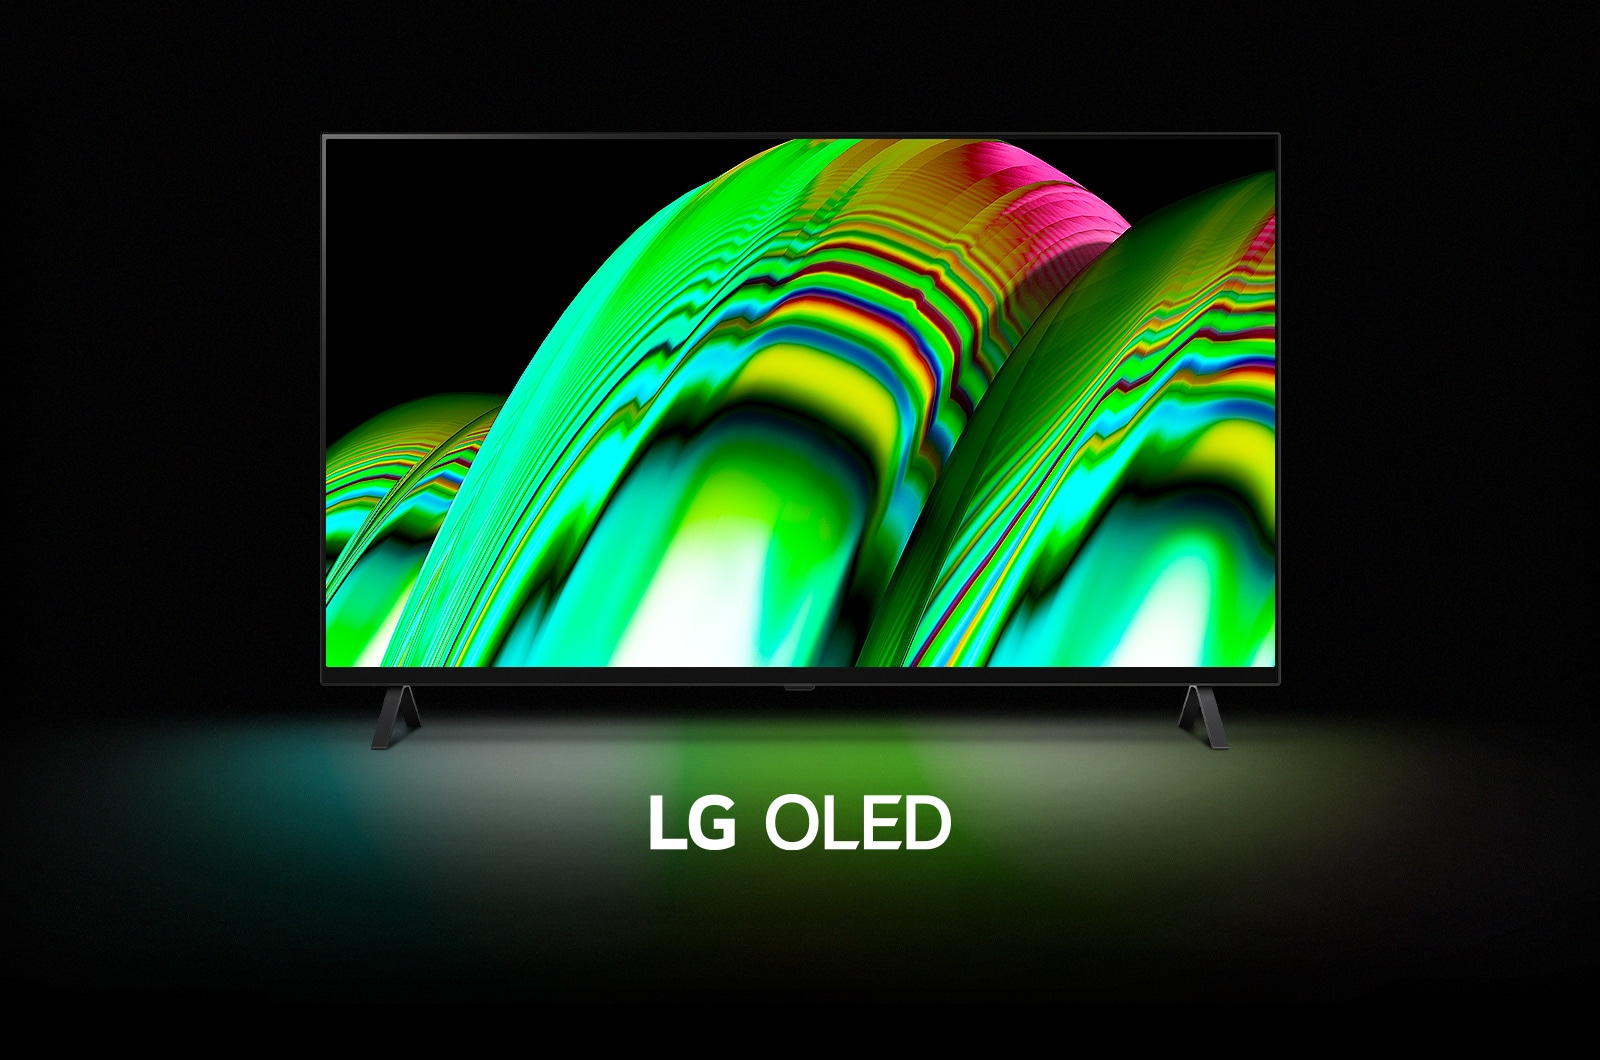 Một mẫu hình sóng trừu tượng màu xanh lá cây lấp đầy màn hình sau đó dần dần phóng to để lộ ra LG OLED A2. Màn hình chuyển sang màu đen sau đó hiển thị mẫu hình sóng một lần nữa với dòng chữ "LG OLED" bên dưới.